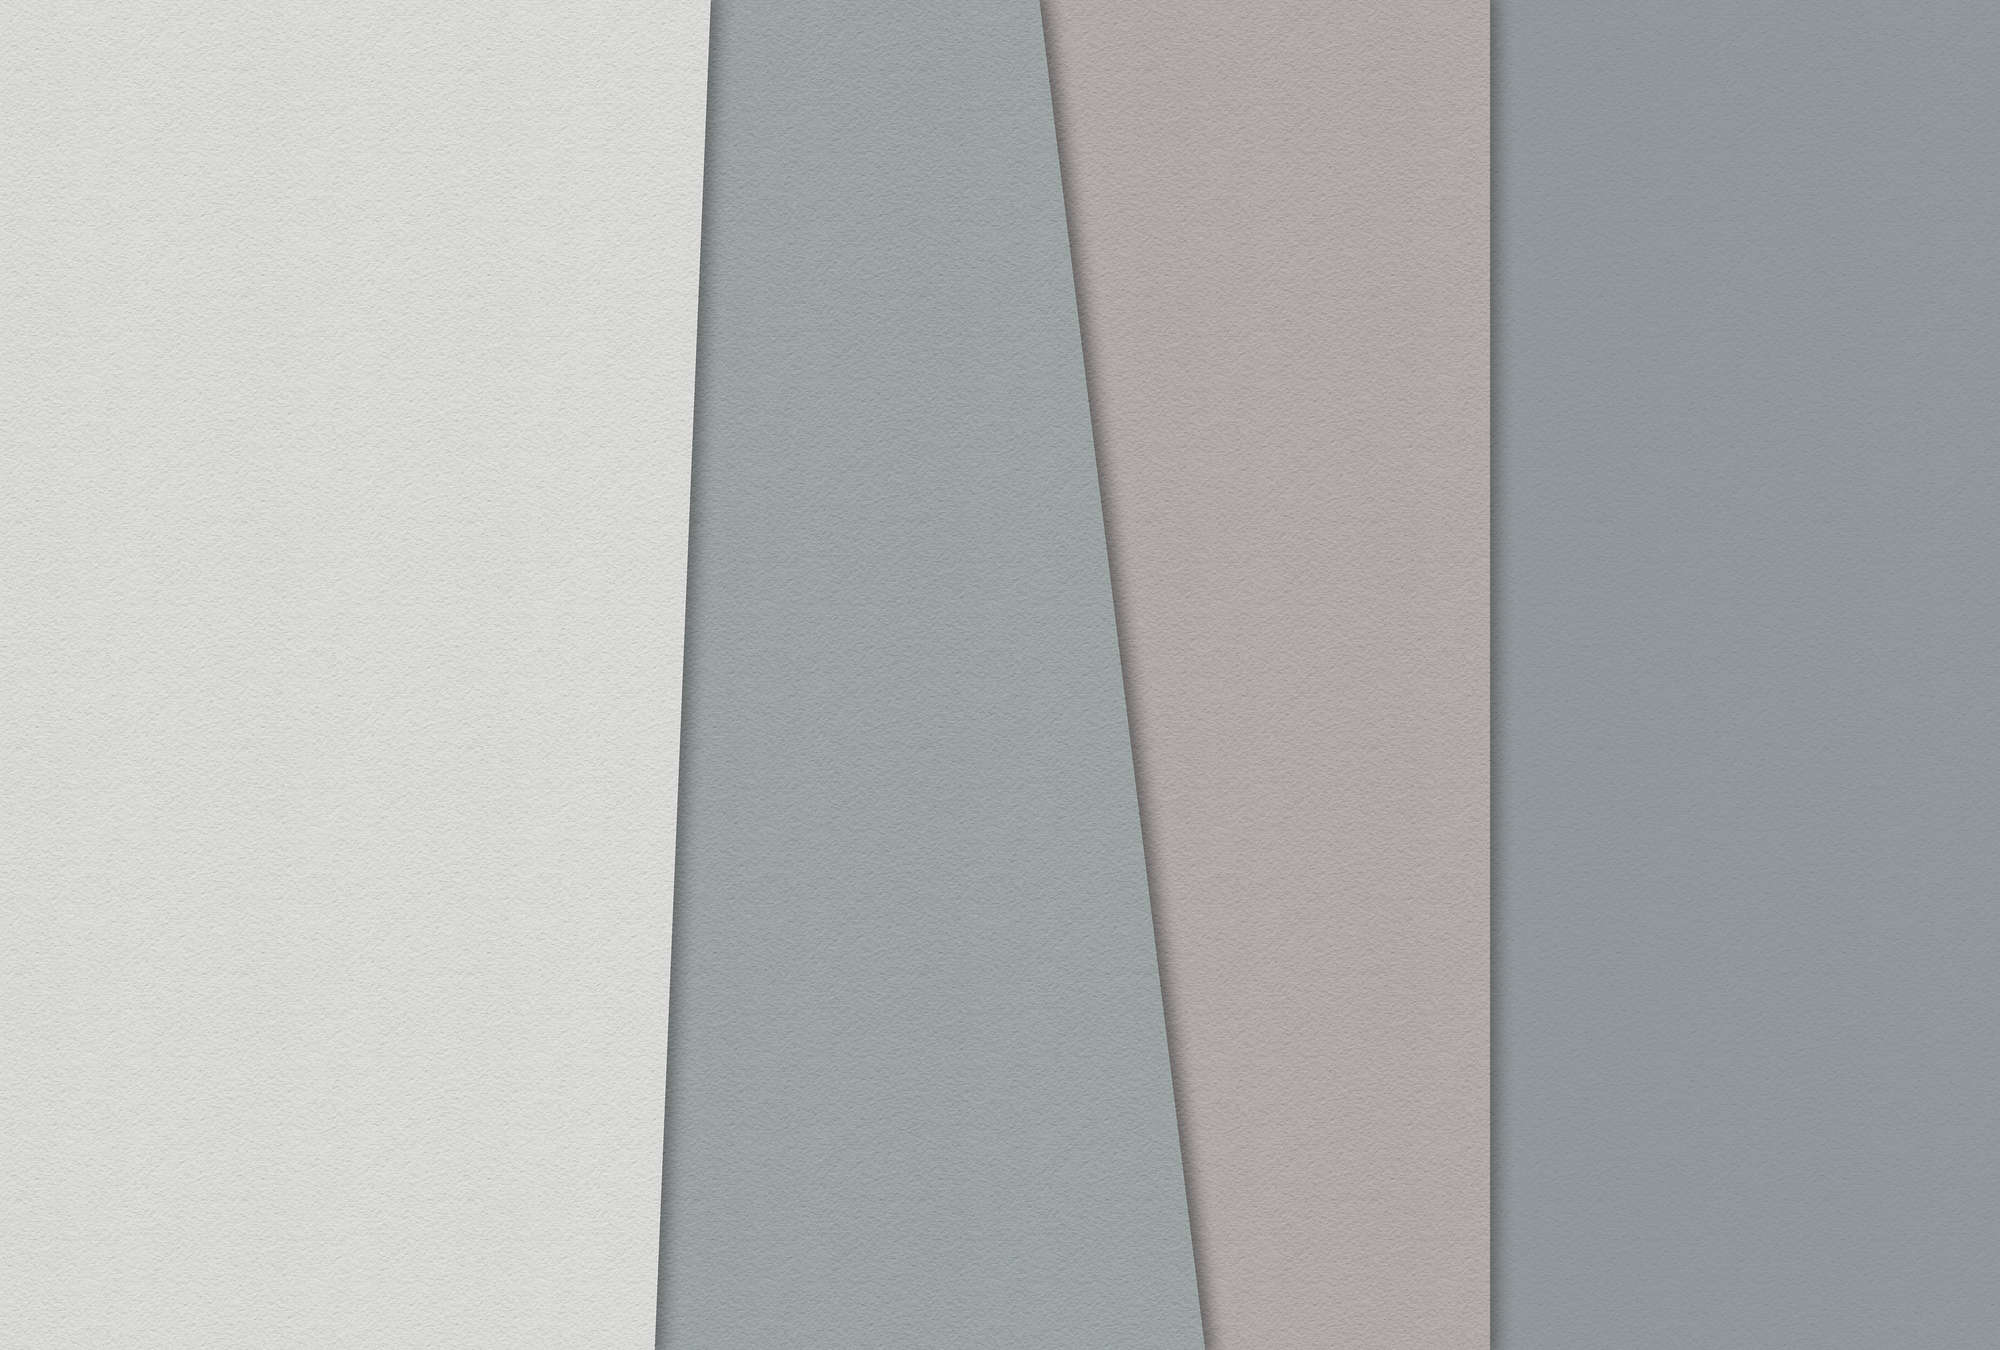             Gelaagd papier 1 - Grafisch behang met gekleurde vlakken in handgemaakte papierstructuur - Blauw, Crème | Pearl glad vlies
        